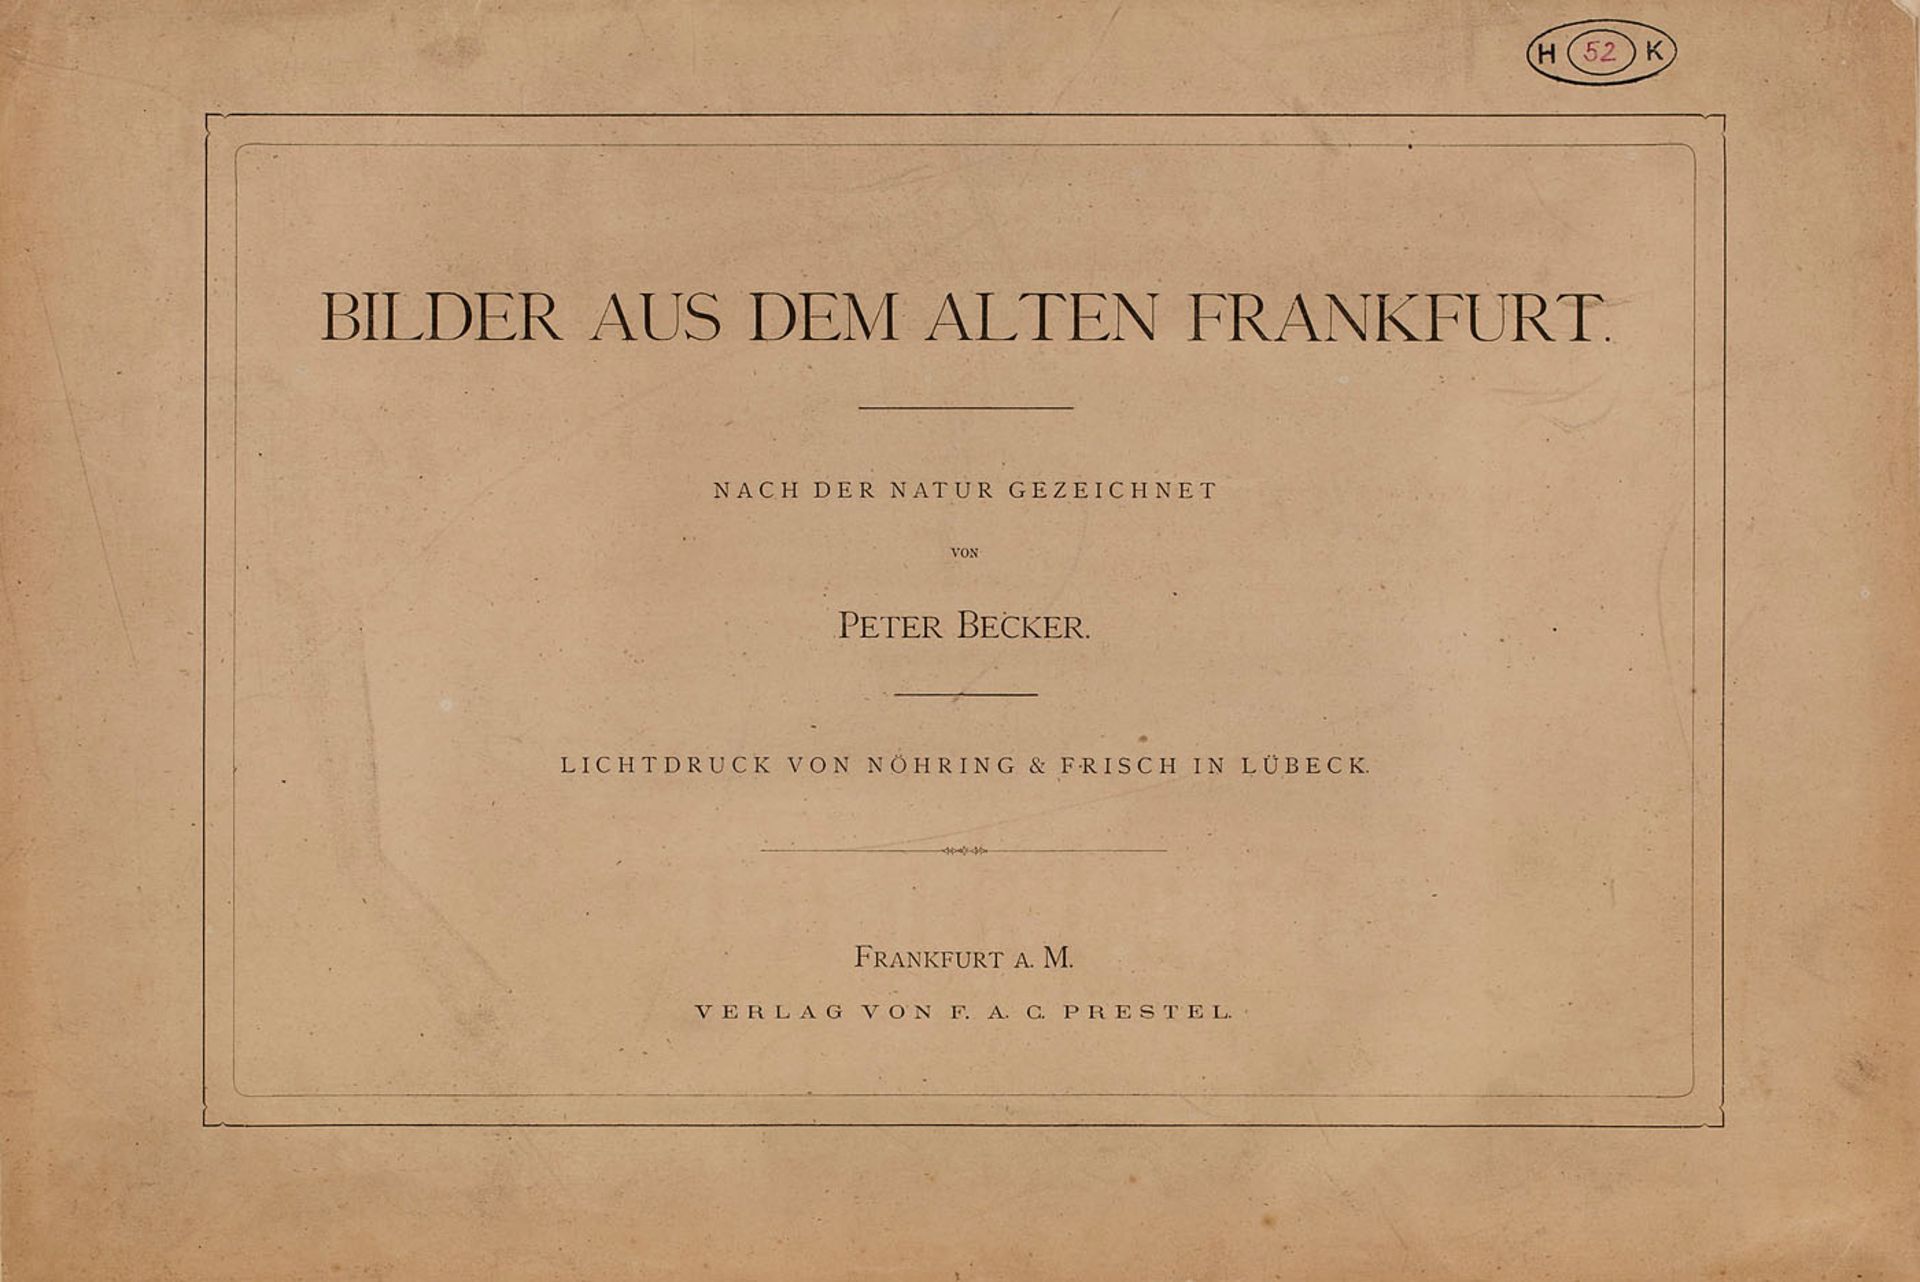 Mappe mit 22 Lichtdrucken nachZeichnungen von Peter Becker "Bilder aus dem alten Frankfurt" Verlag - Image 2 of 2